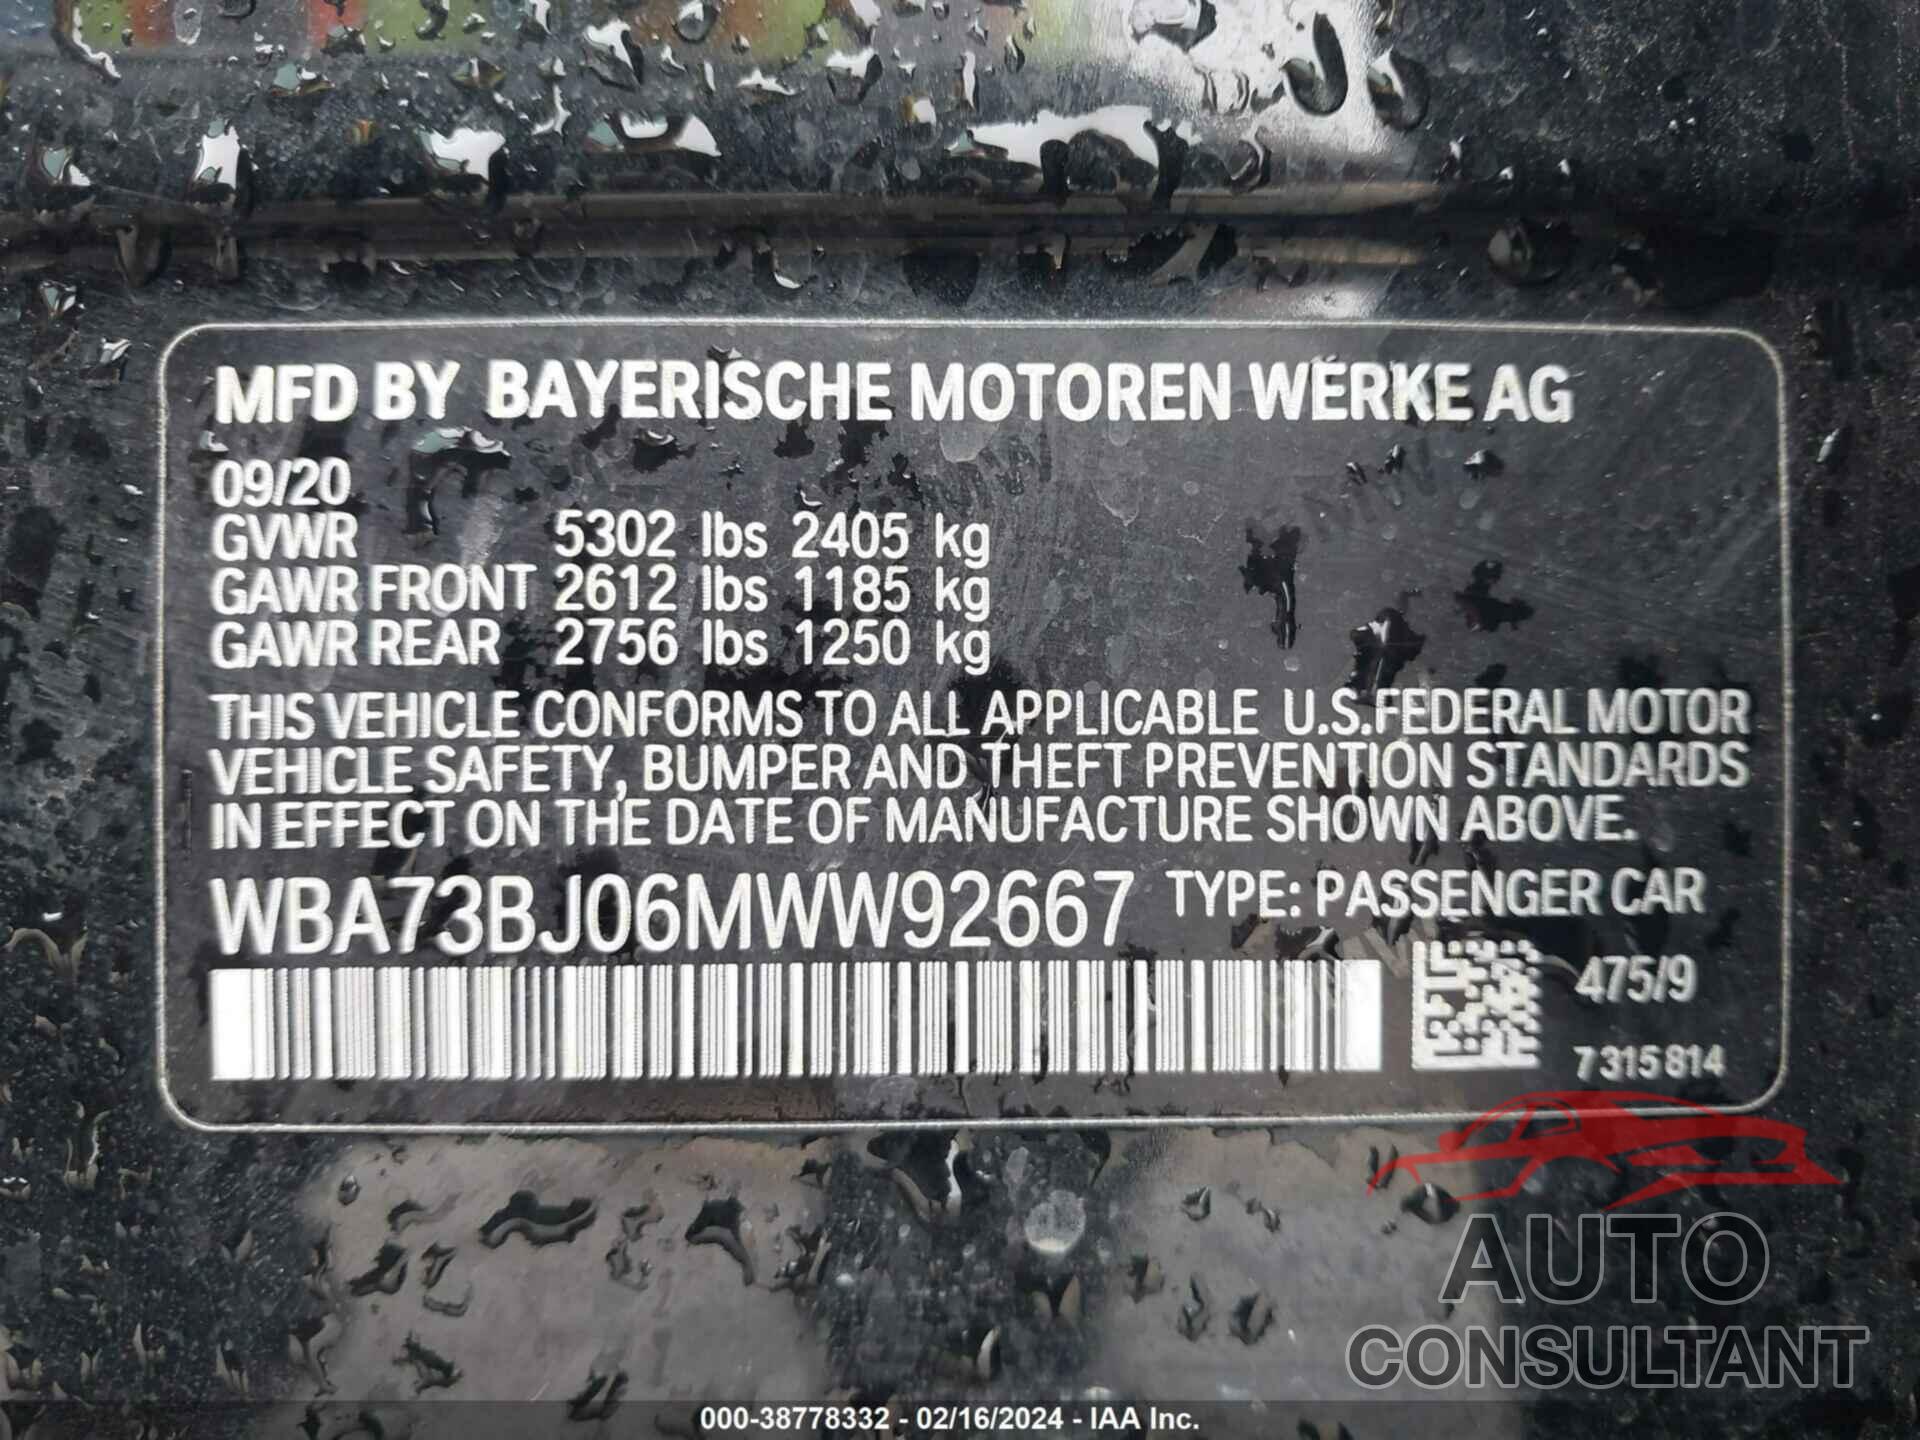 BMW 540I 2021 - WBA73BJ06MWW92667